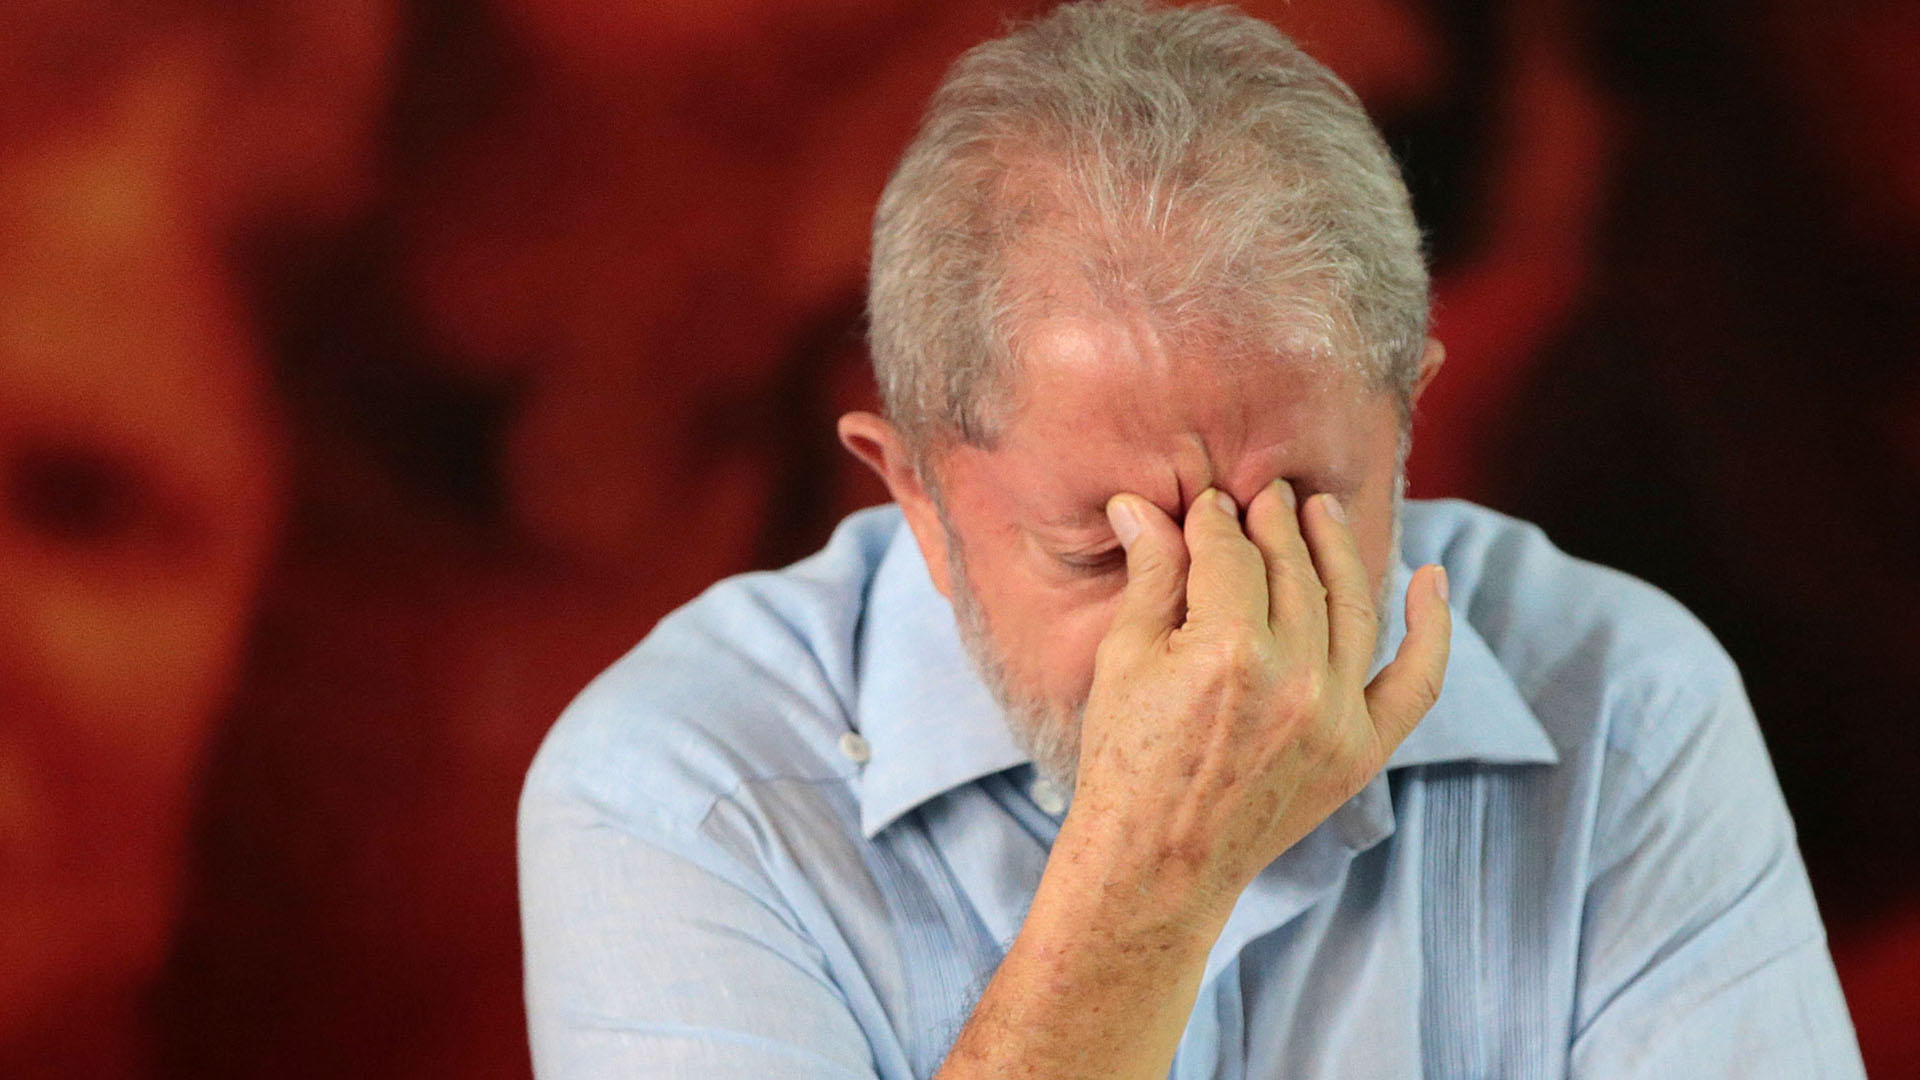 El ex mandatario brasileño Lula da Silva está en prisión cumpliendo una condena por corrupción